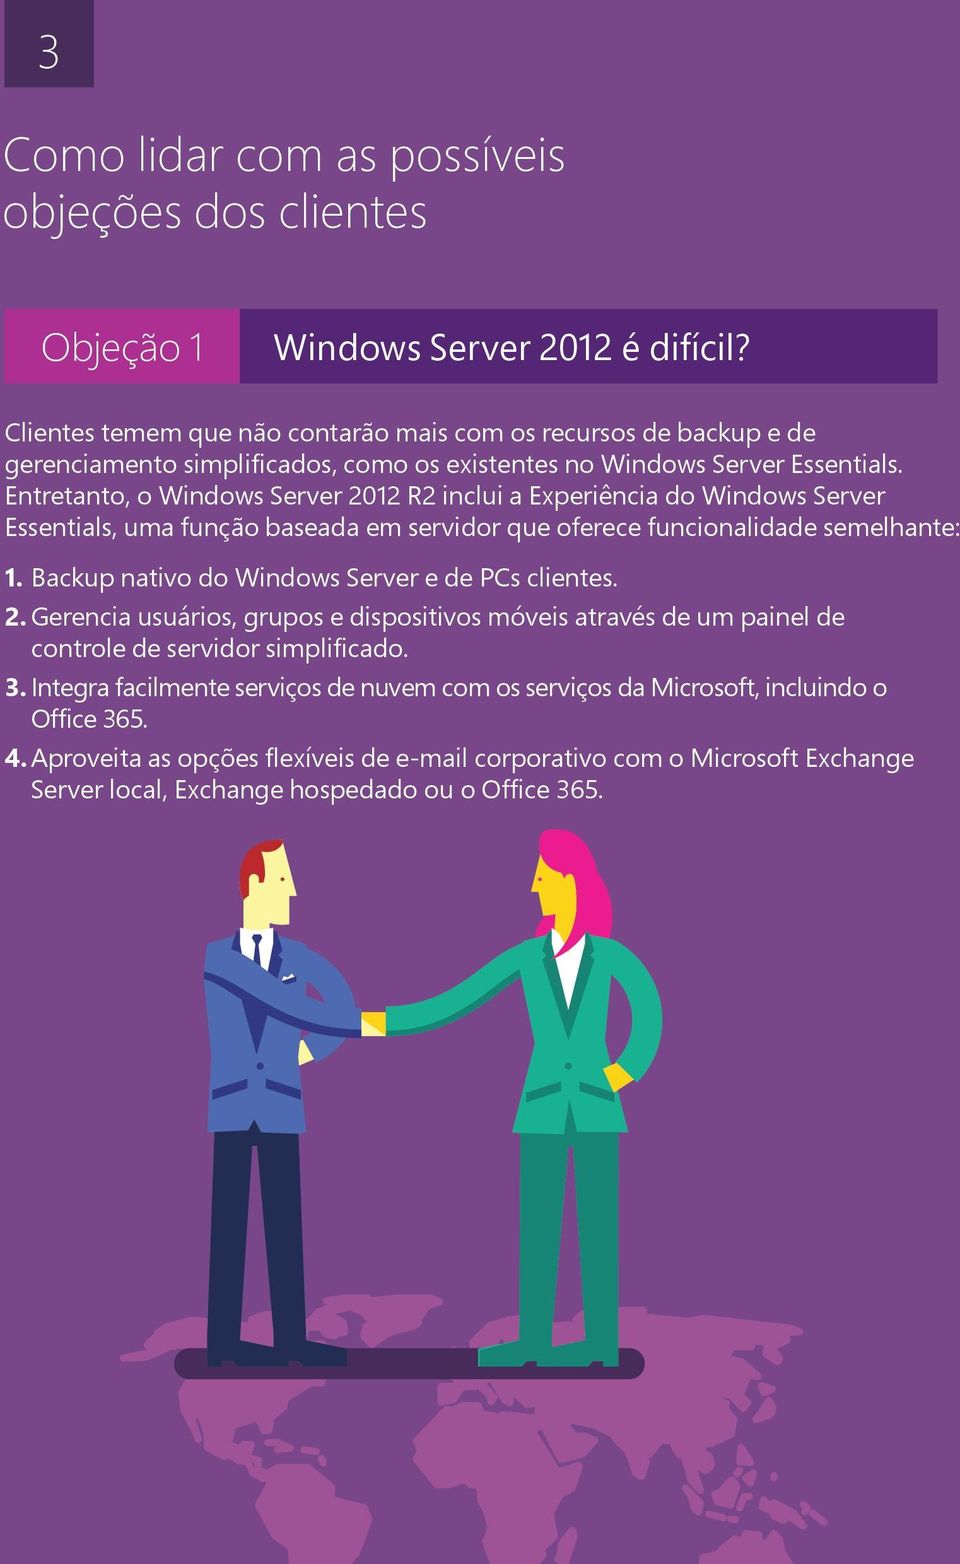 Entretanto, o Windows Server 2012 R2 inclui a Experiência do Windows Server Essentials, uma função baseada em servidor que oferece funcionalidade semelhante: 1.